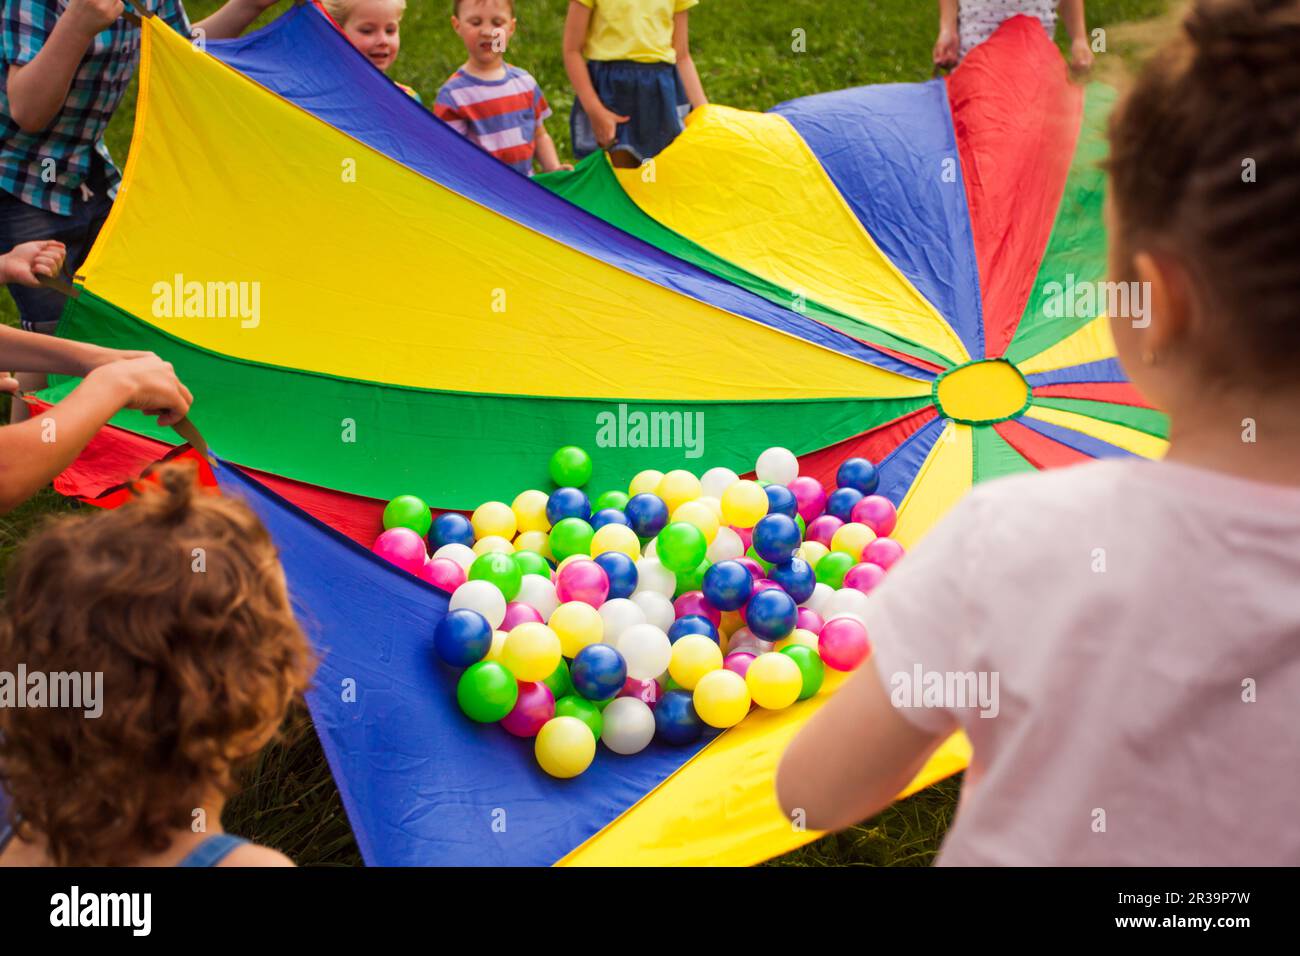 Les enfants se réjouivent d'un parachute arc-en-ciel rempli de balles Banque D'Images